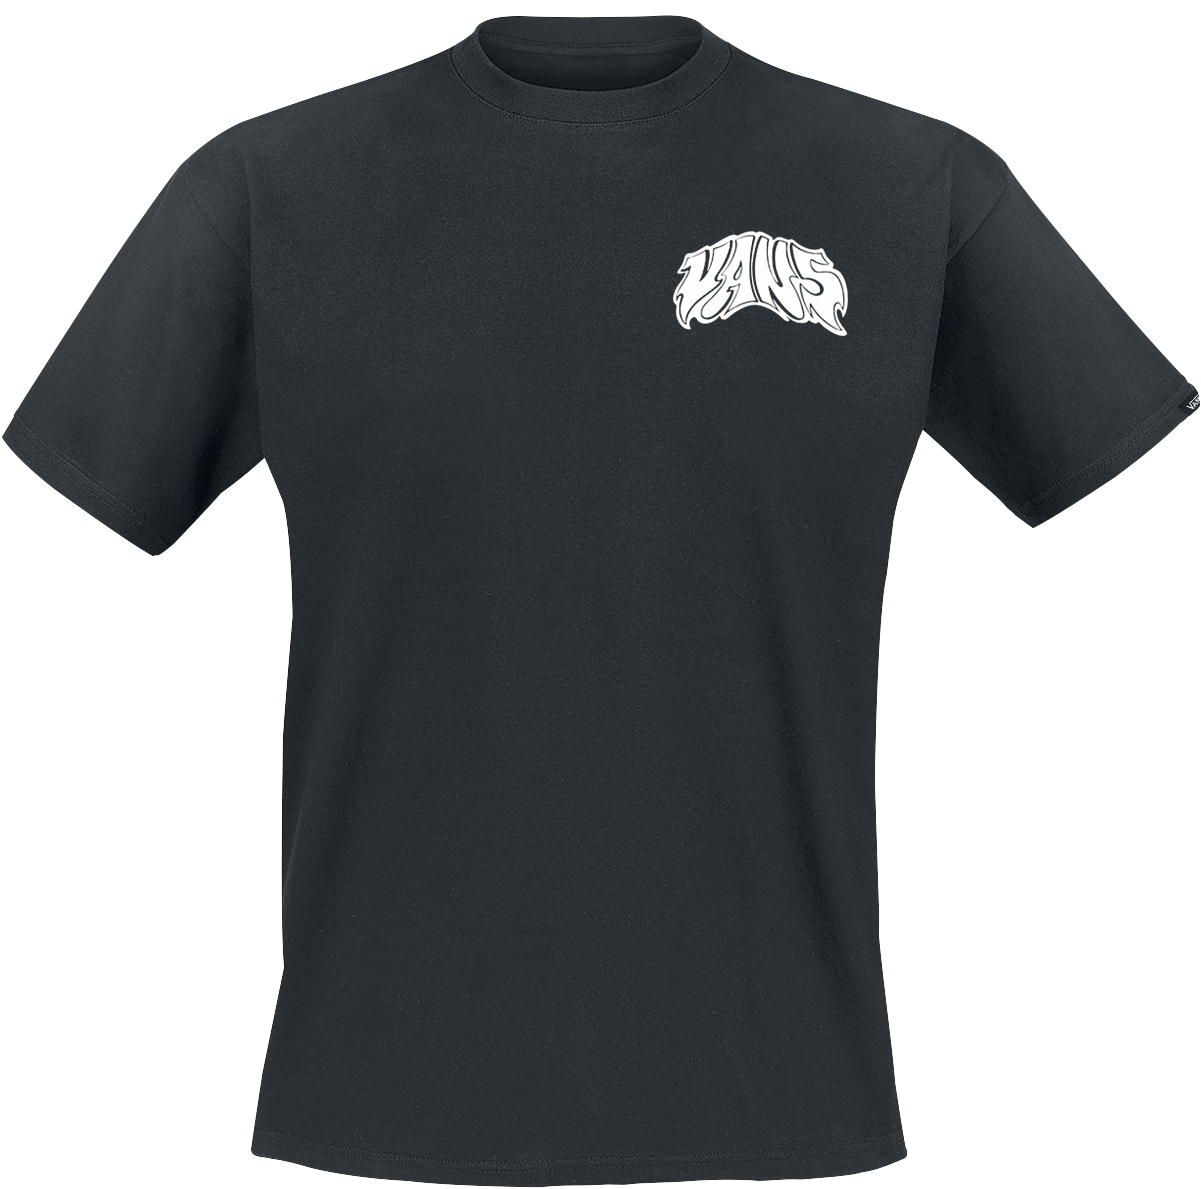 Vans - Prowler Tee - T-Shirt - schwarz